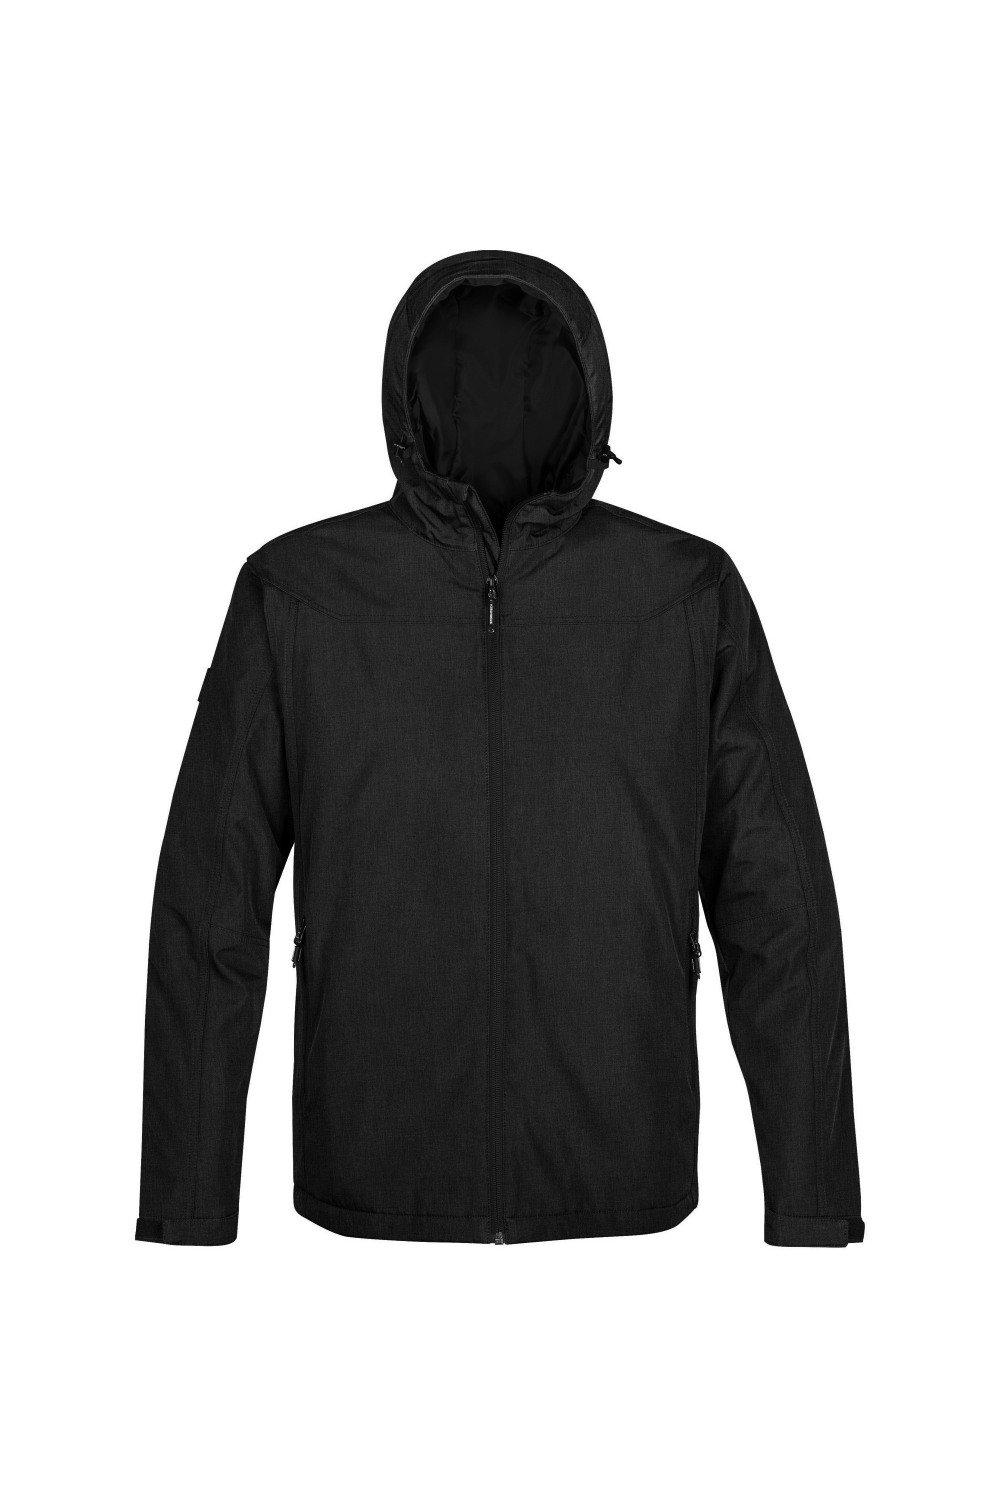 Тепловая куртка Endurance Stormtech, черный